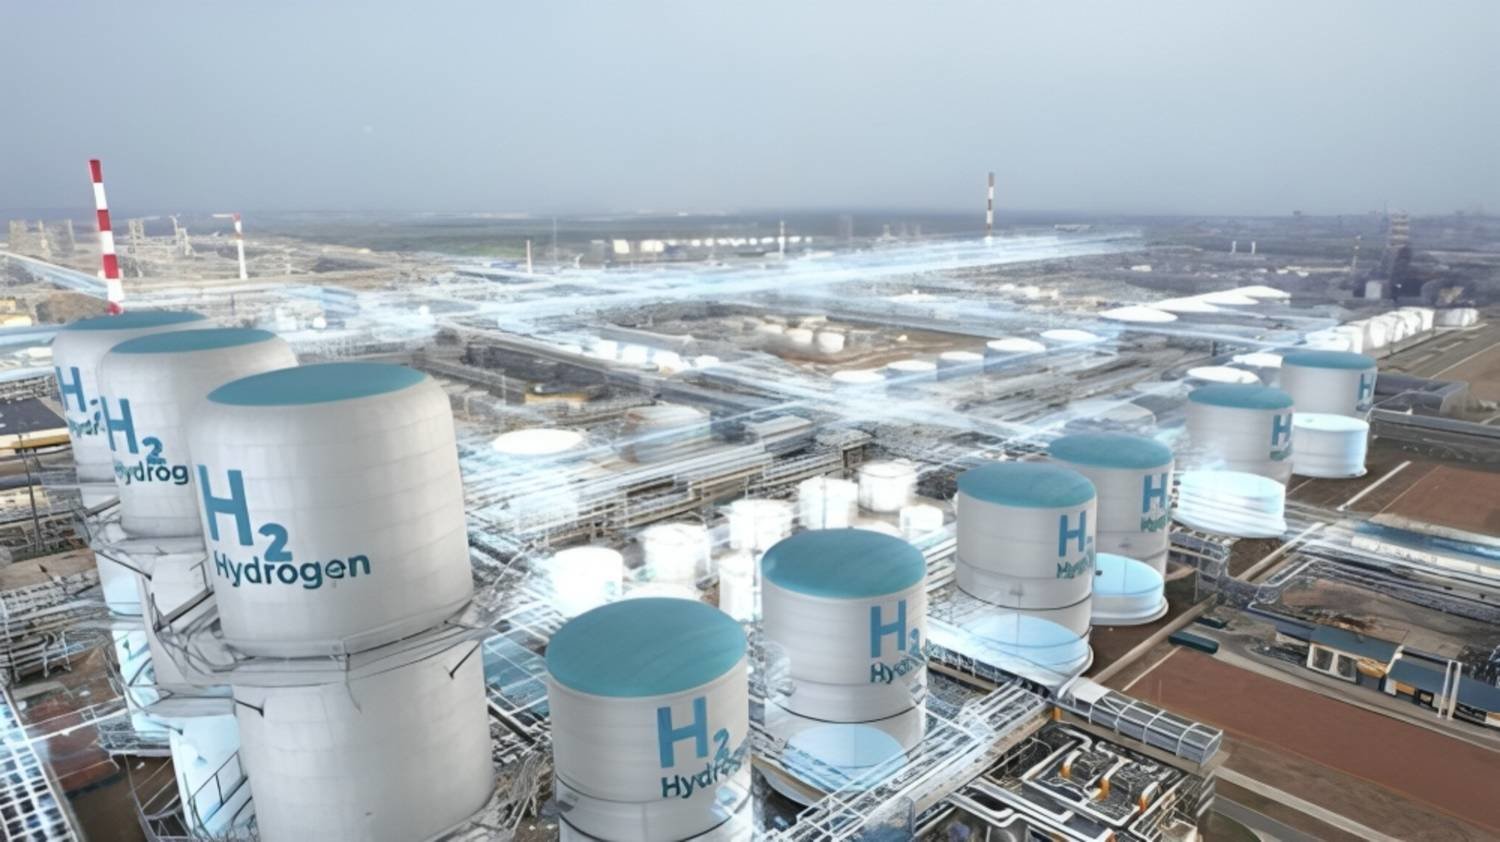 تهدف المملكة العربية السعودية إلى أن تصبح واحدة من أكبر مصدري الهيدروجين النظيف في العالم (الشرق الأوسط)